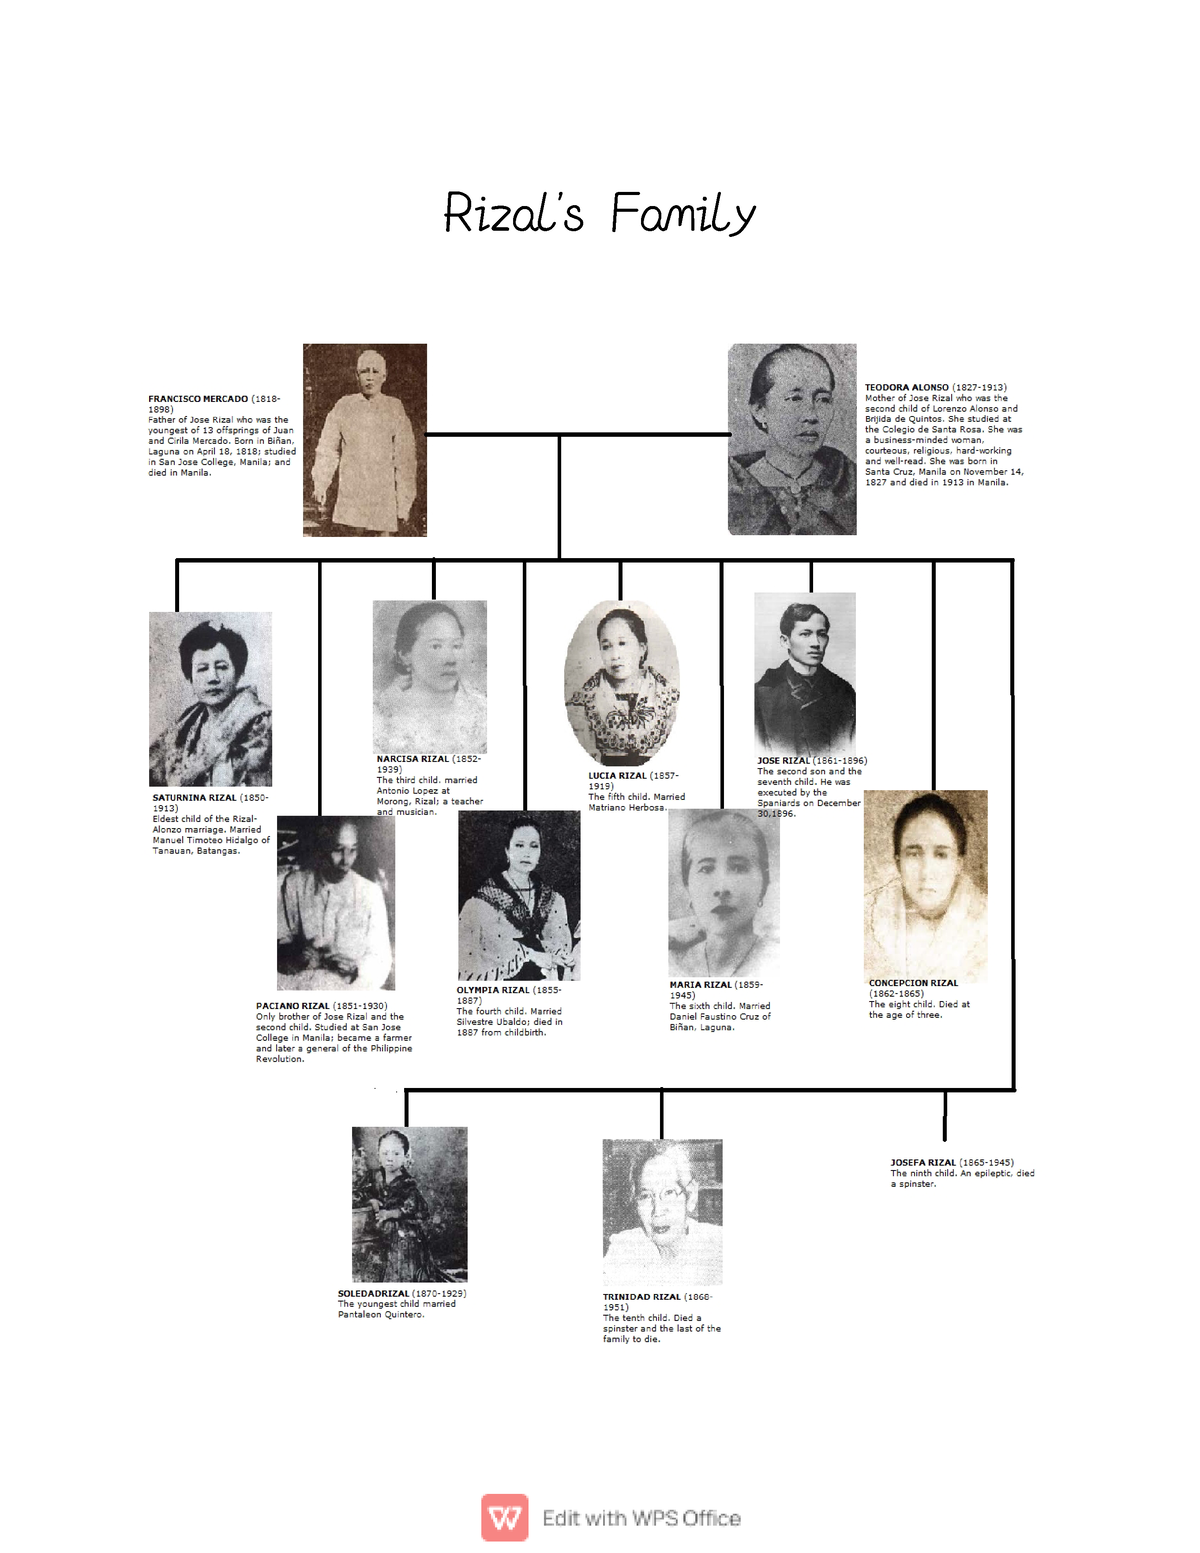 Gem101 - Rizal’s Family Explain how Filipinos view Rizal’s execution ...